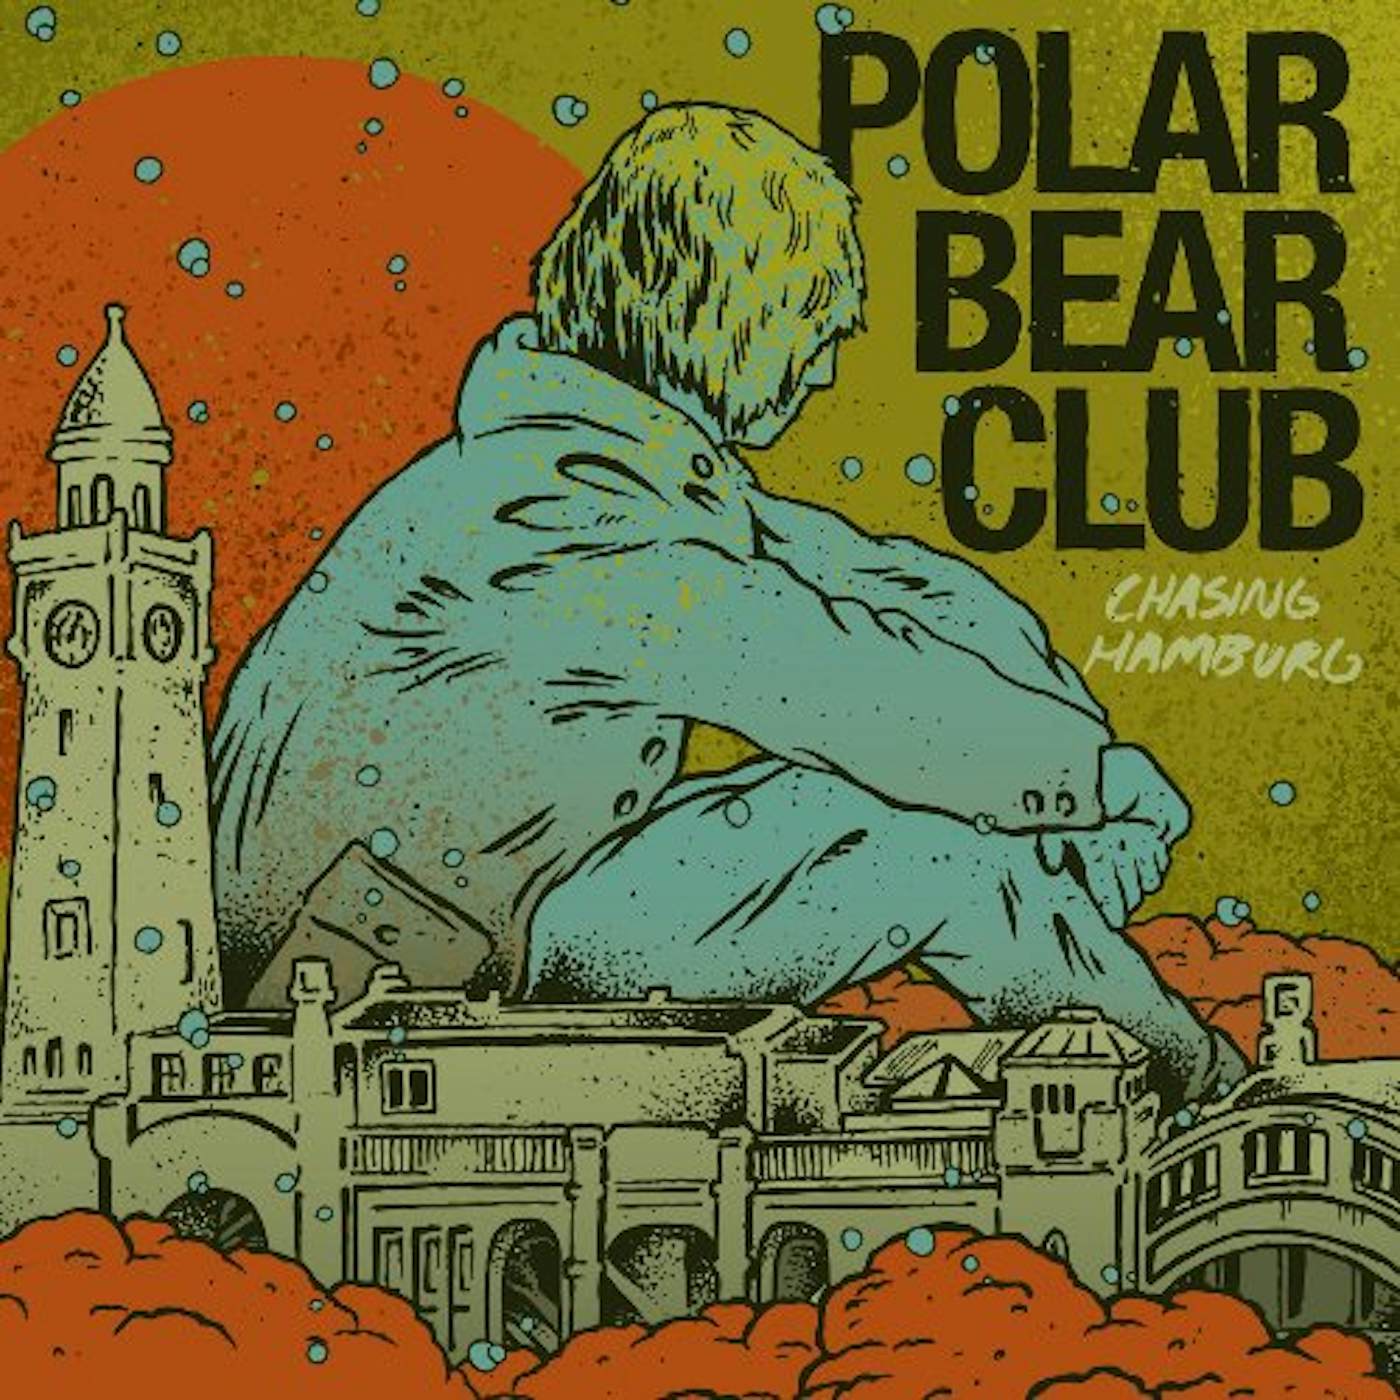 Polar Bear Club CHASING HAMBURG CD